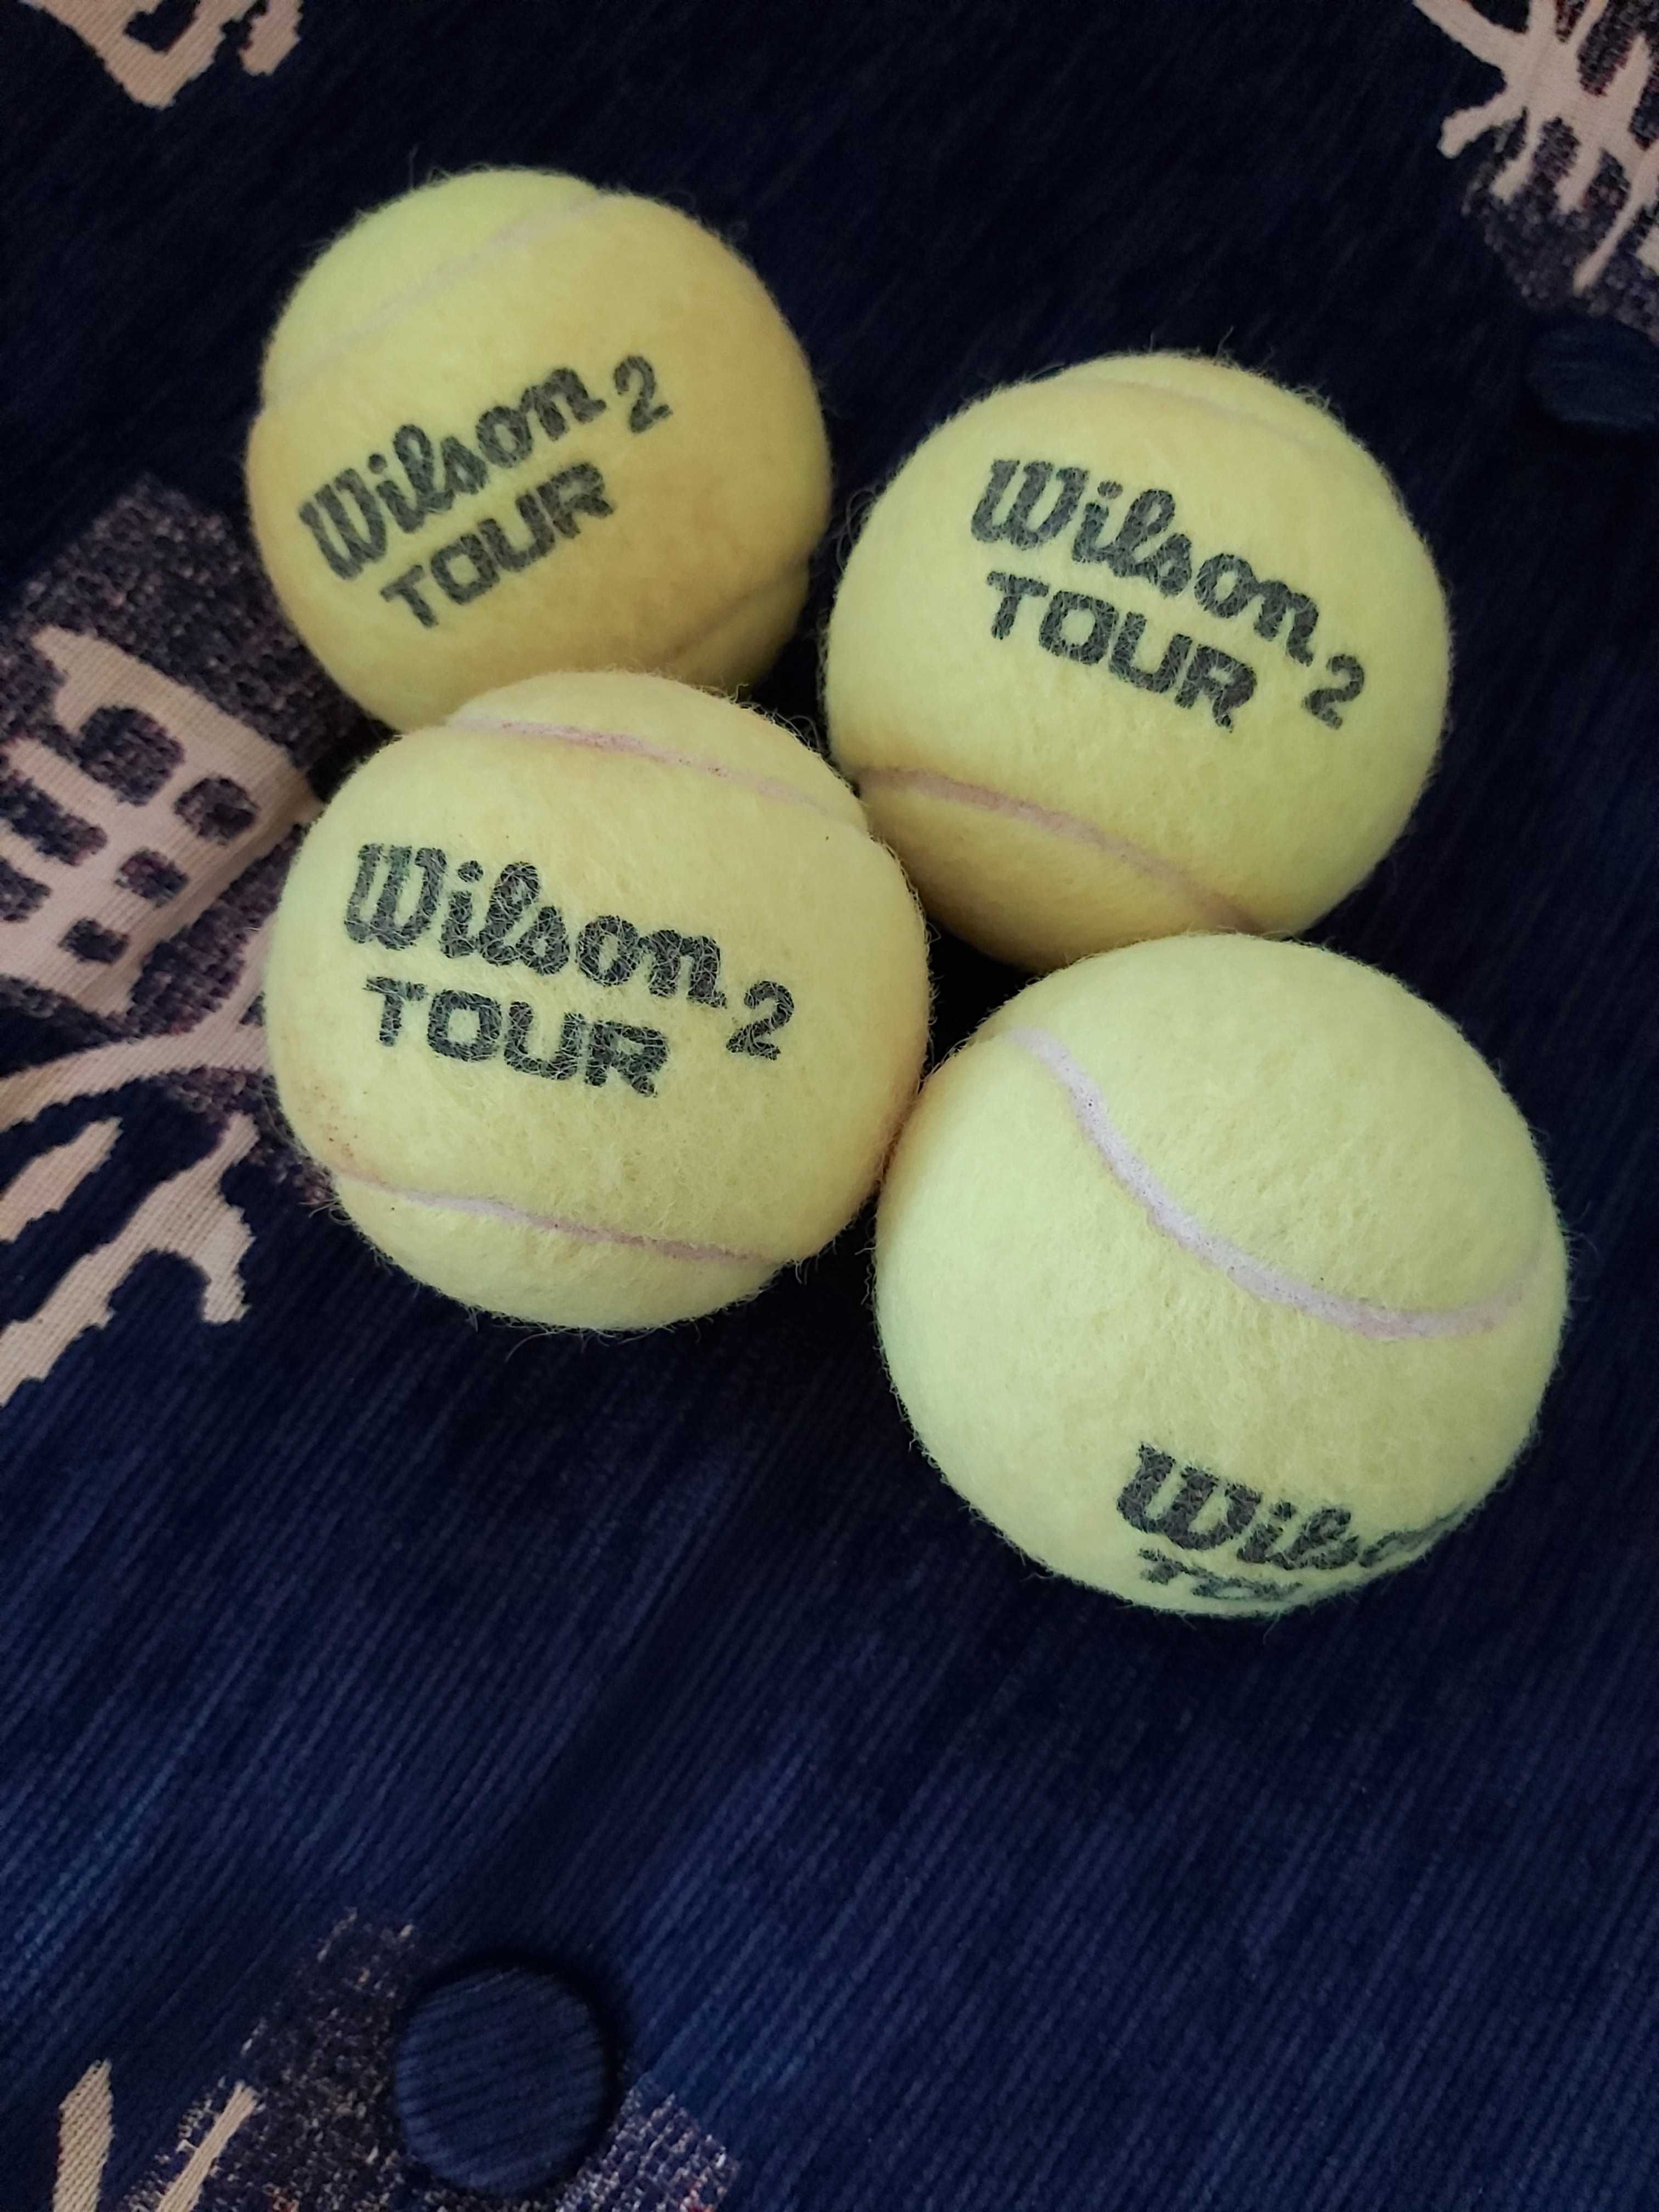 Теннисные мячи Wilson Balls, банка - 4 мяча